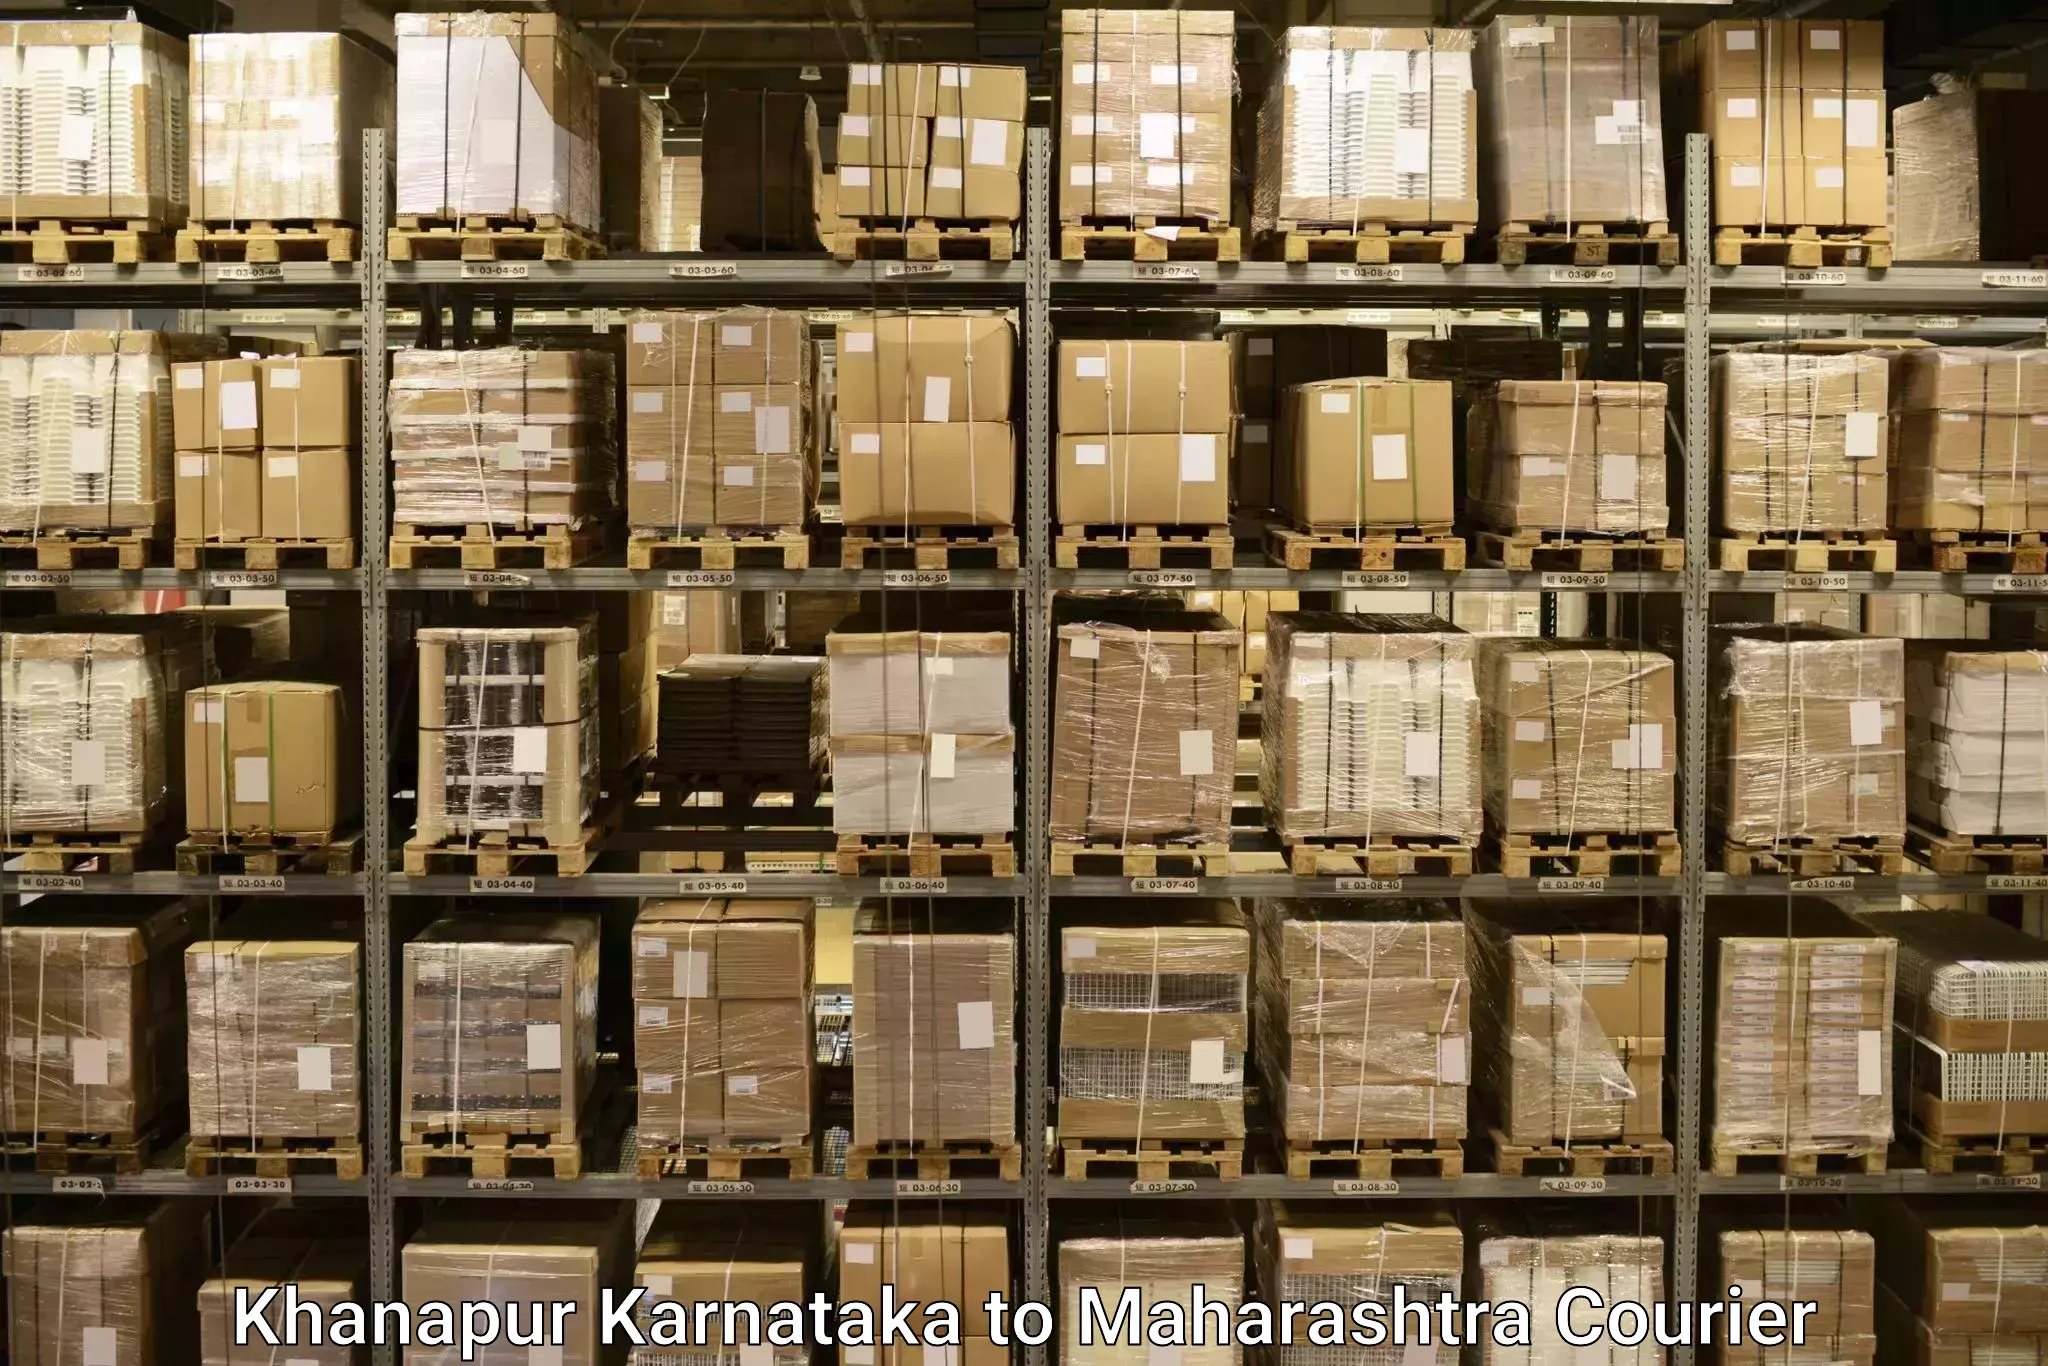 Baggage shipping experts Khanapur Karnataka to Jawaharlal Nehru Port Nhava Sheva